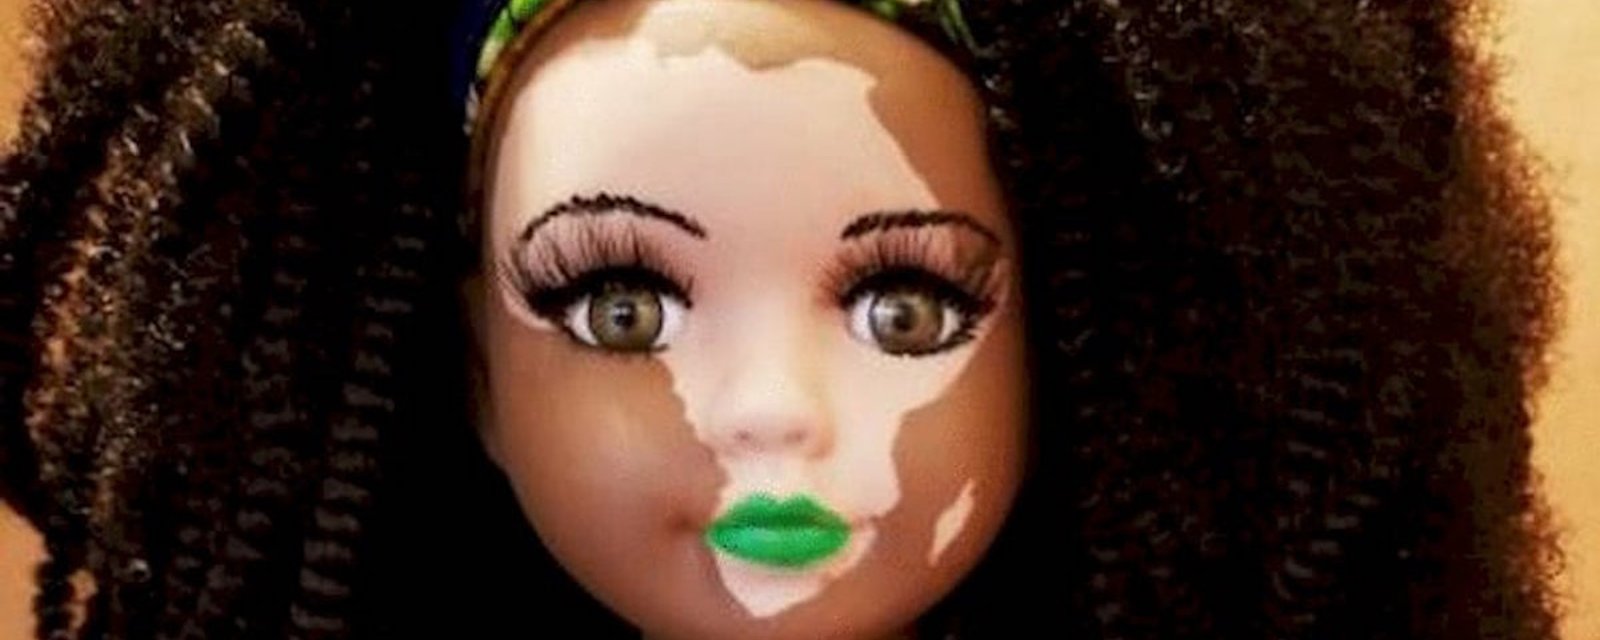 Une femme crée des poupées étonnantes pour aider les enfants atteints de vitiligo